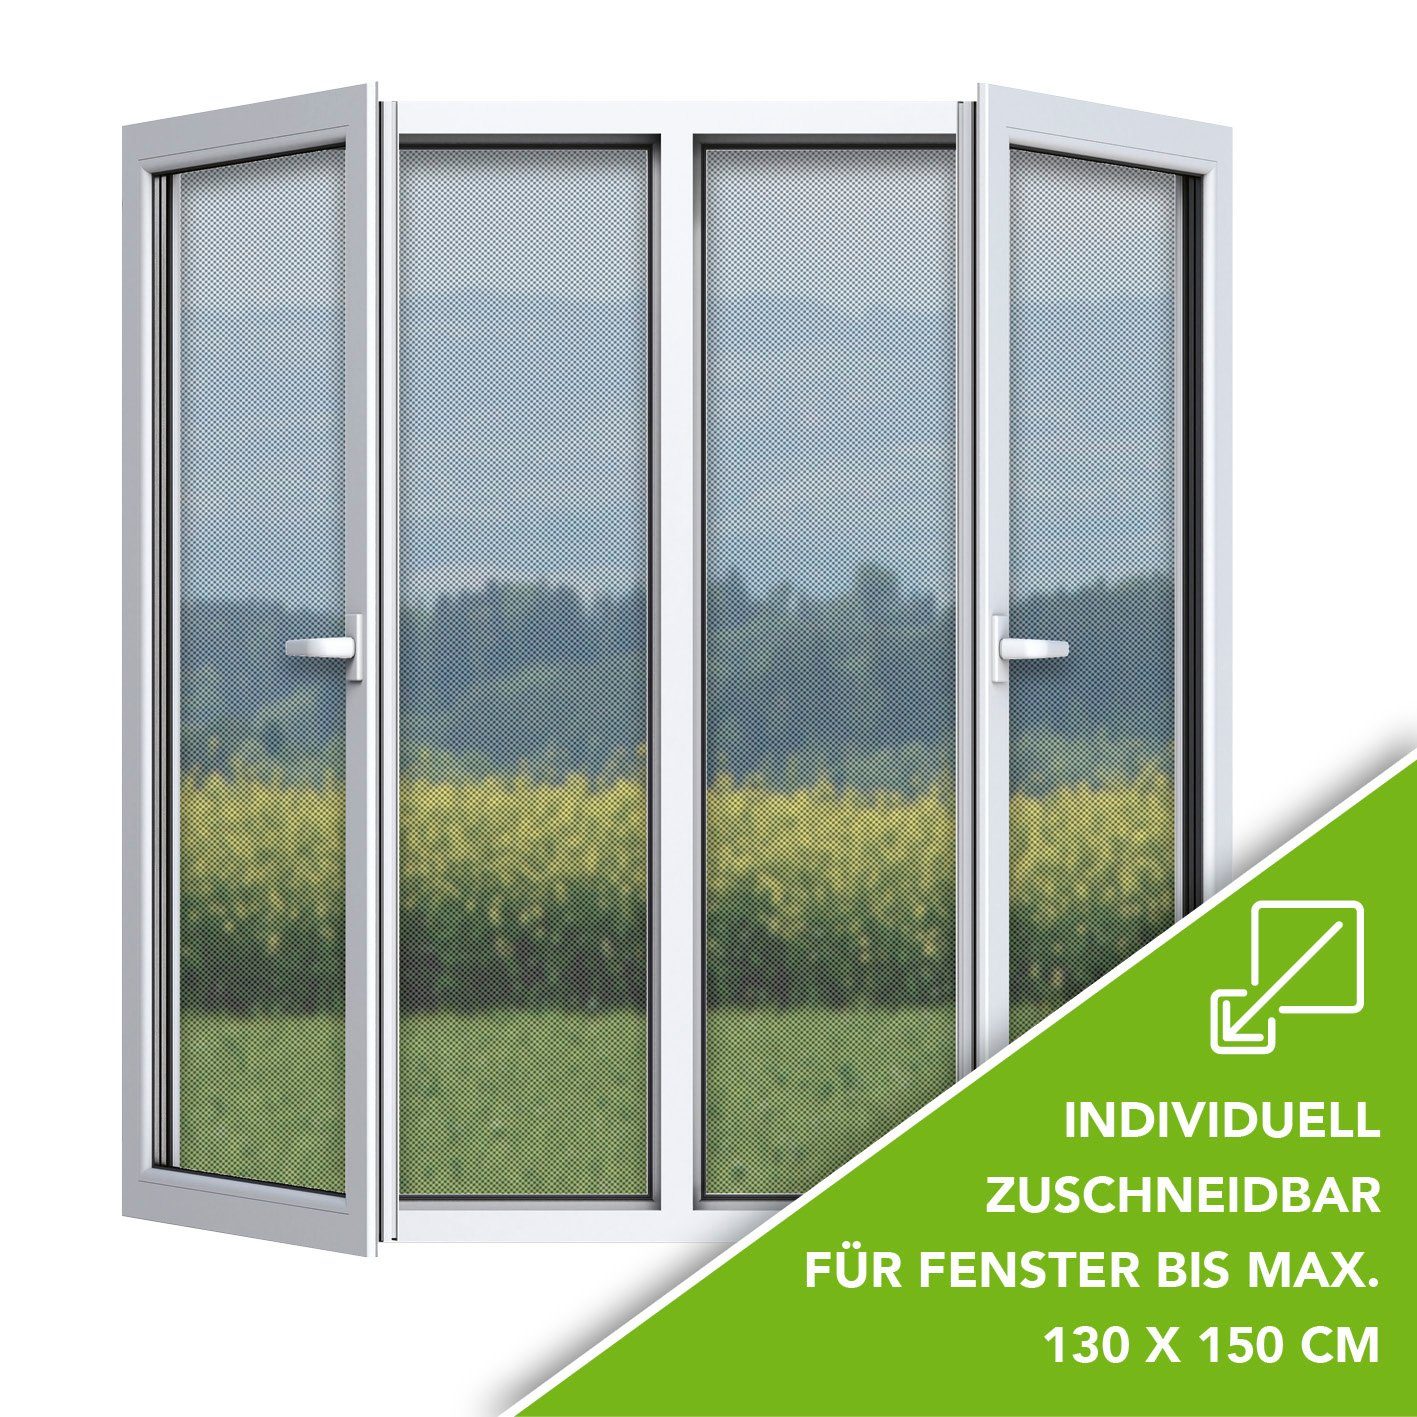 Klettverschluss, mit Insektenschutz-Fensterrahmen EASYmaxx zuschneidbar 130x150cm Moskitonetz